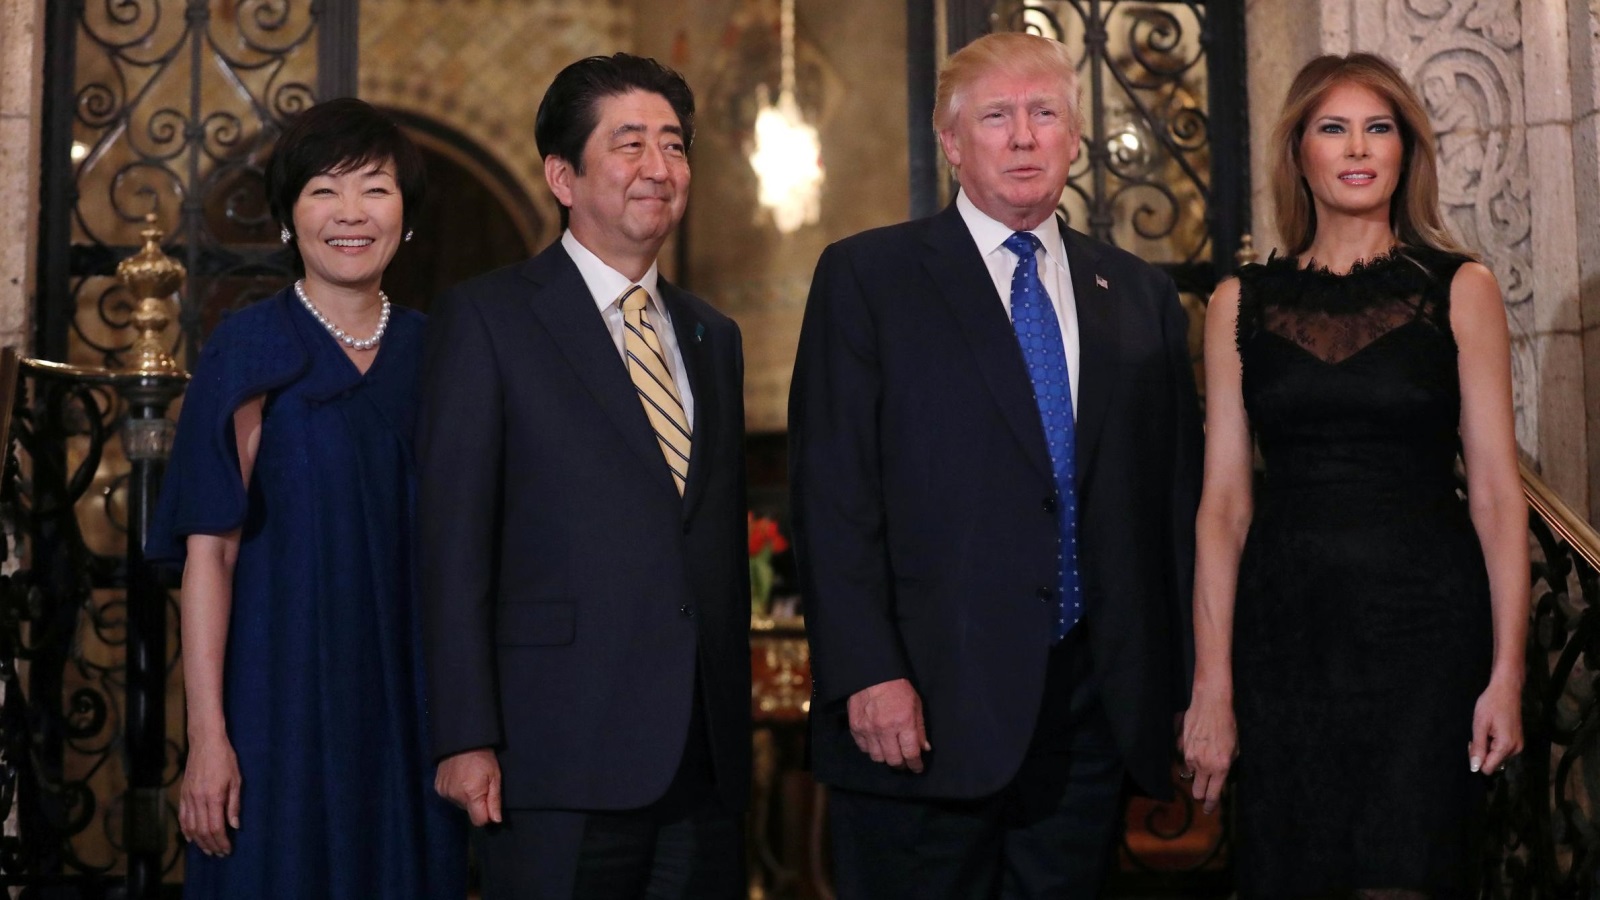 ‪التجربة الجديدة تزامنت مع قضاء ترمب ورئيس وزراء اليابان عطلتيهما بفلوريدا‬ (رويترز)